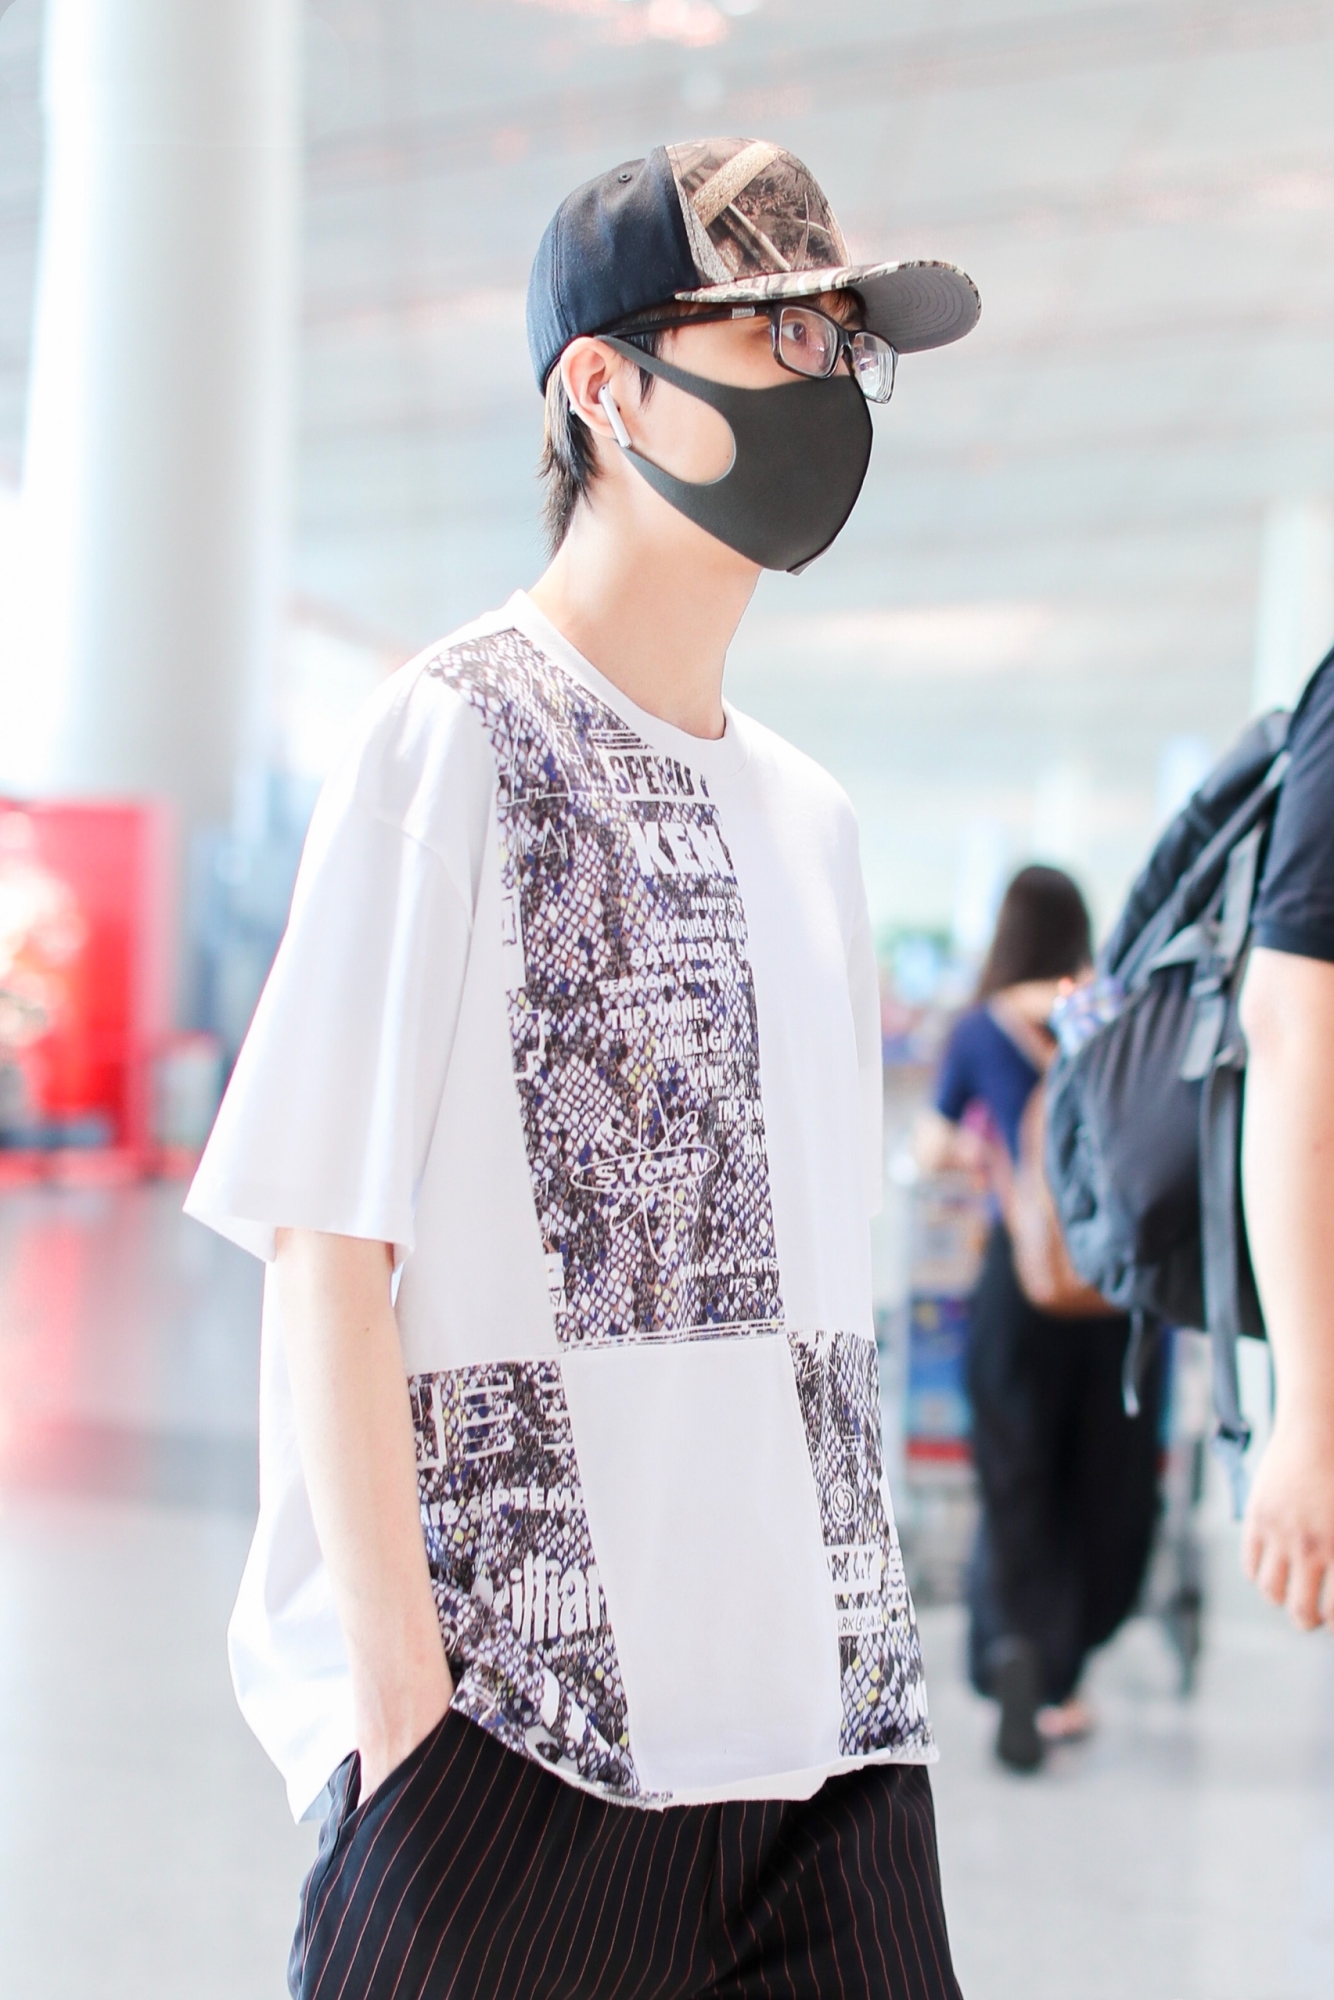 2018年7月28日,歌手许嵩现身北京机场